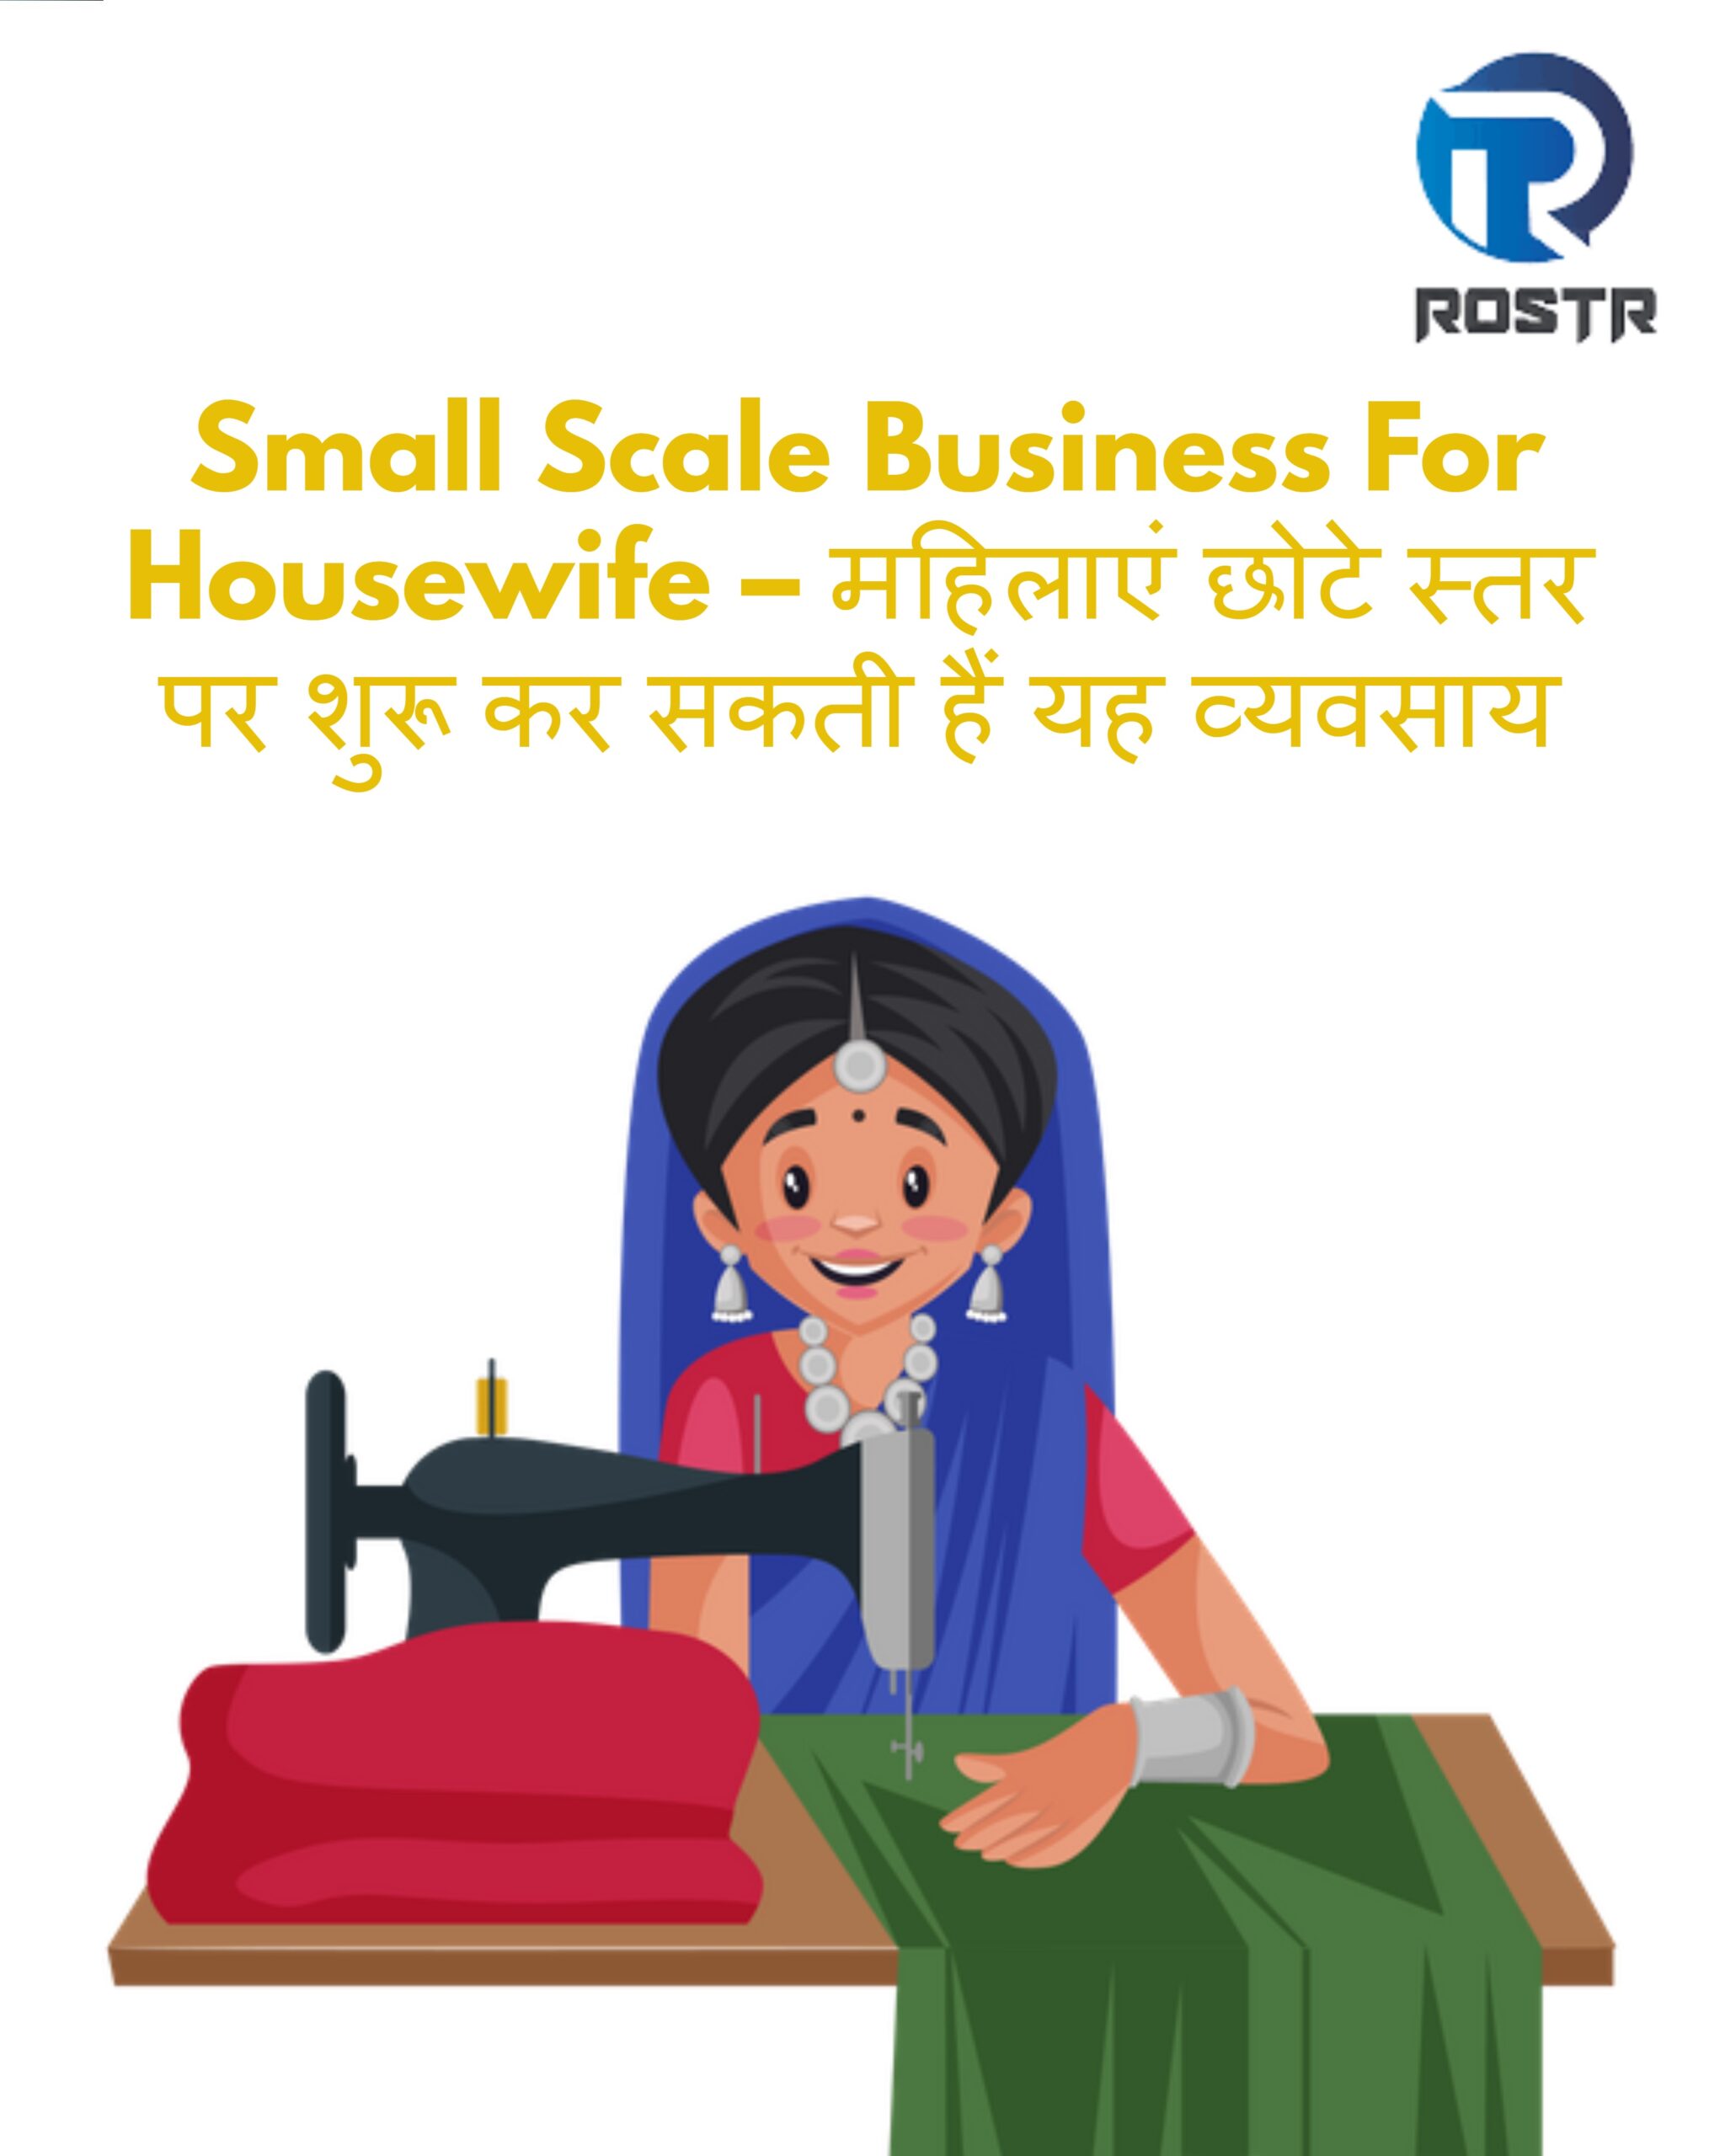 Small Scale Business For Housewife – महिलाएं छोटे स्तर पर शुरू कर सकती हैं यह व्यवसाय